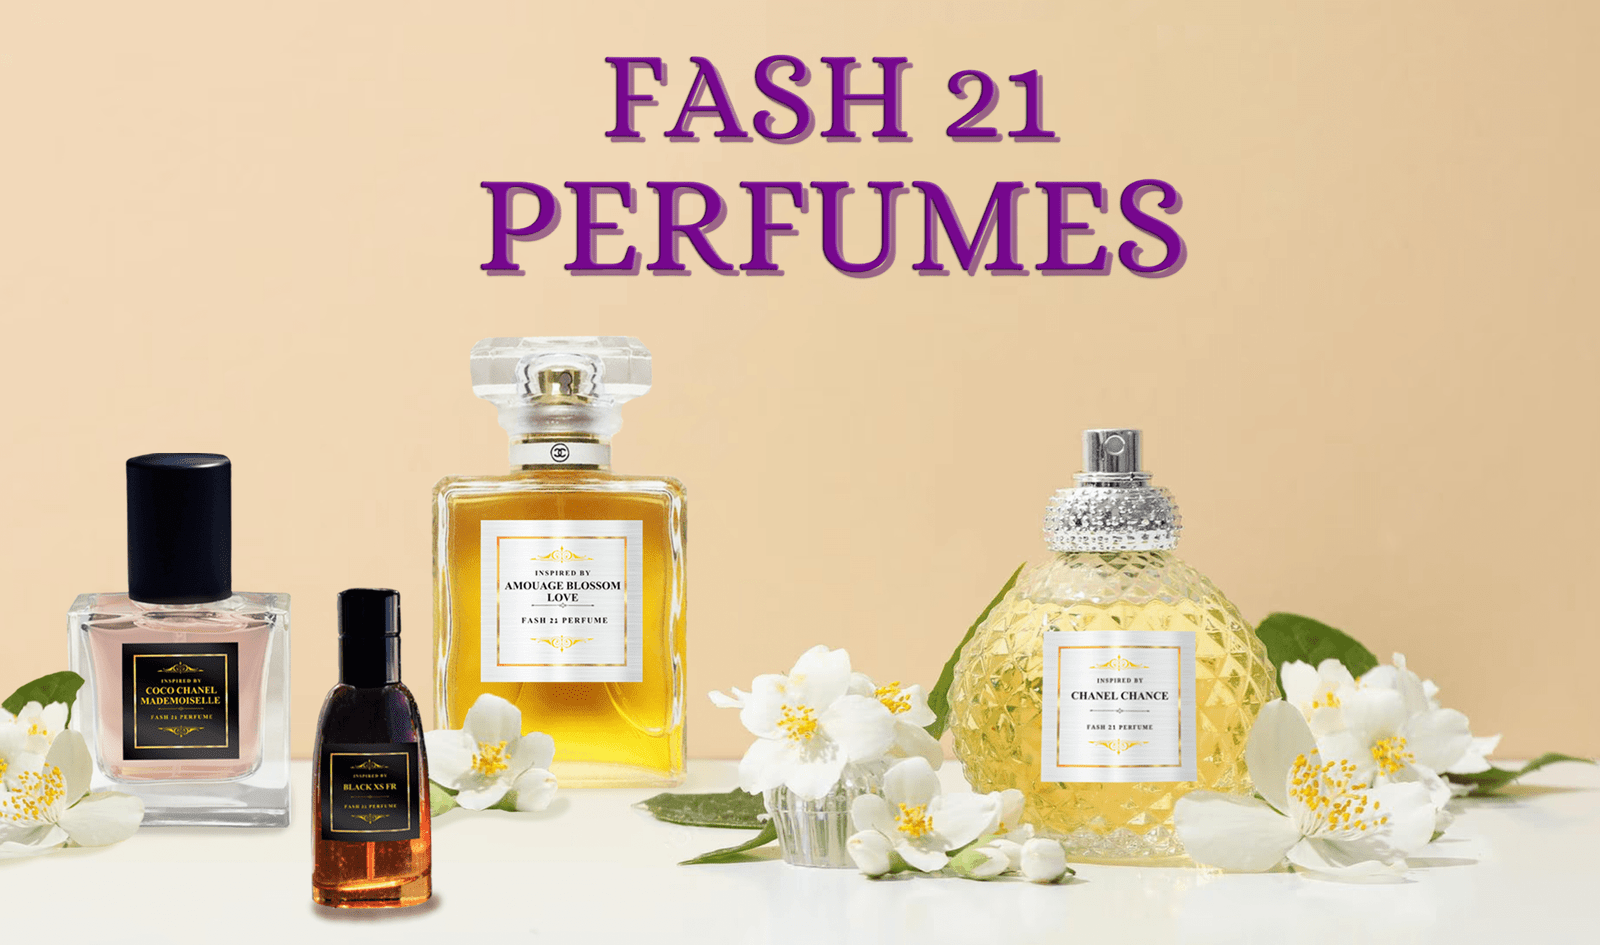 Fash 21 Perfumes